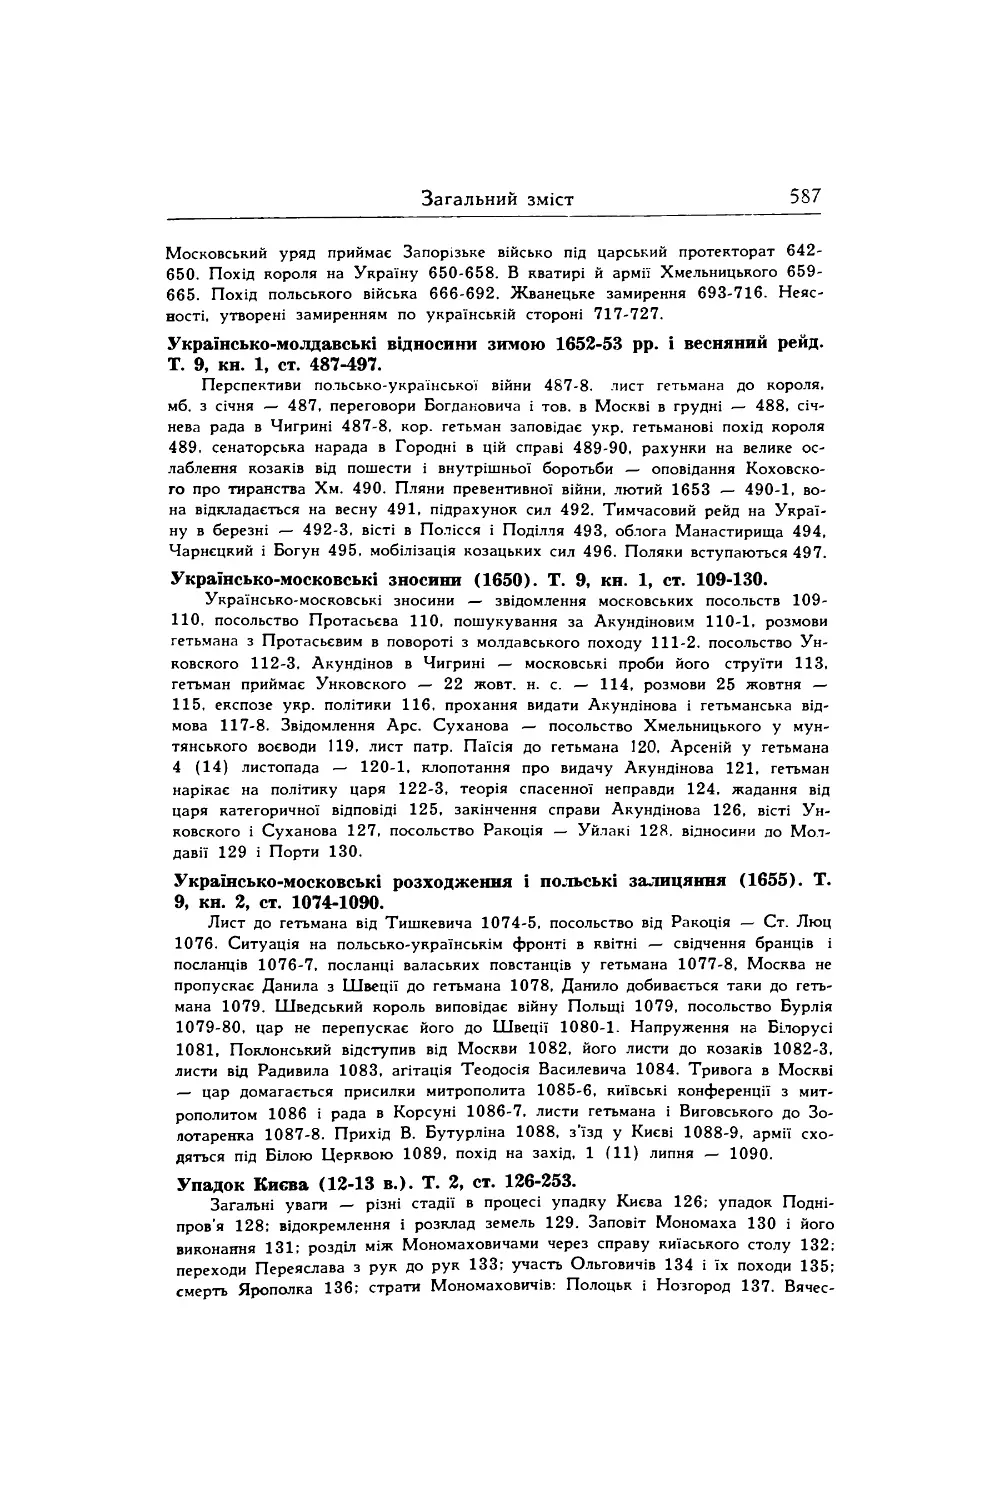 Українсько-молдавські відносини зимою 1652-53 pp. і весняний рейд. Т. 9, кн. 1, ст. 487-497.